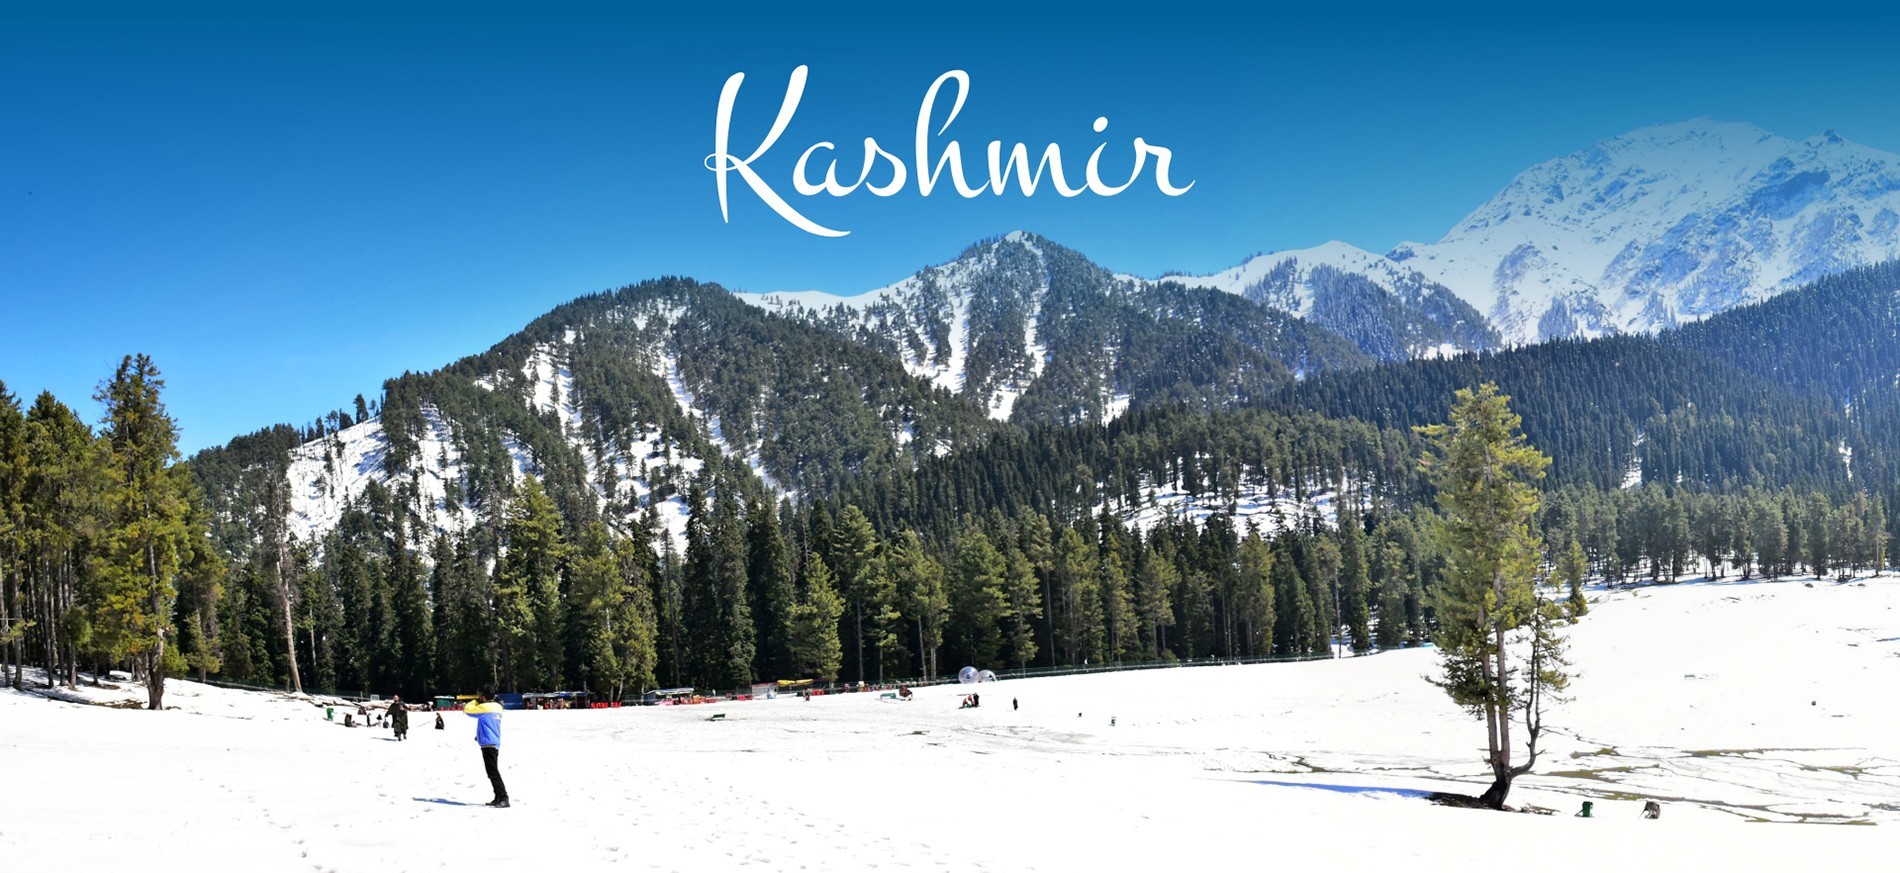 Book Our Kashmir Tour Packages| Kashmir Tour - Ajay Modi Travels